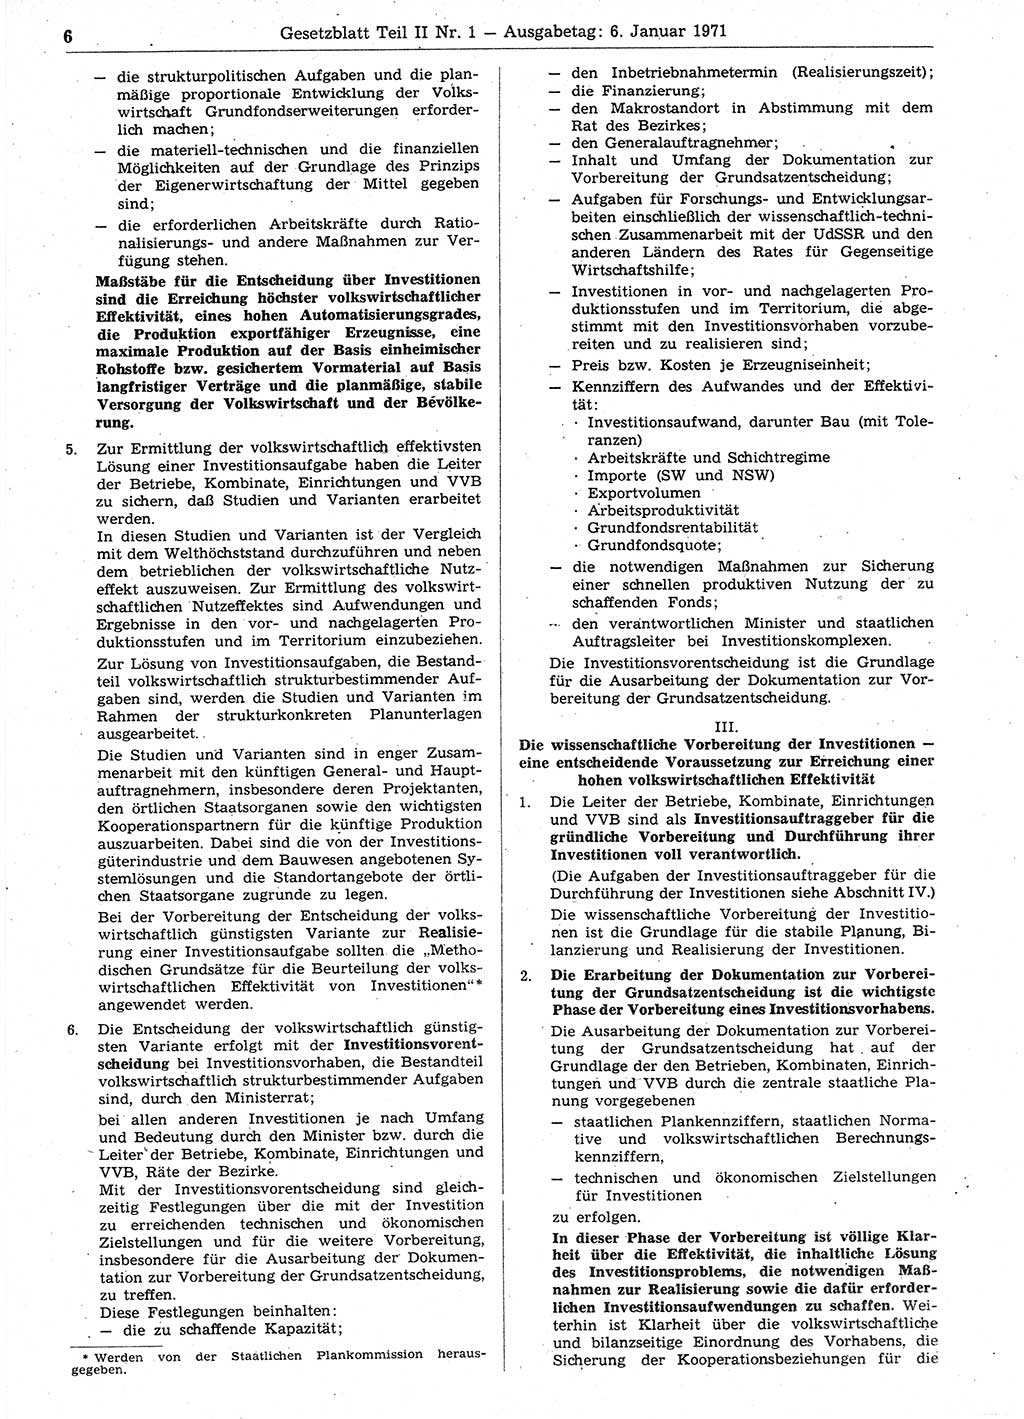 Gesetzblatt (GBl.) der Deutschen Demokratischen Republik (DDR) Teil ⅠⅠ 1971, Seite 6 (GBl. DDR ⅠⅠ 1971, S. 6)